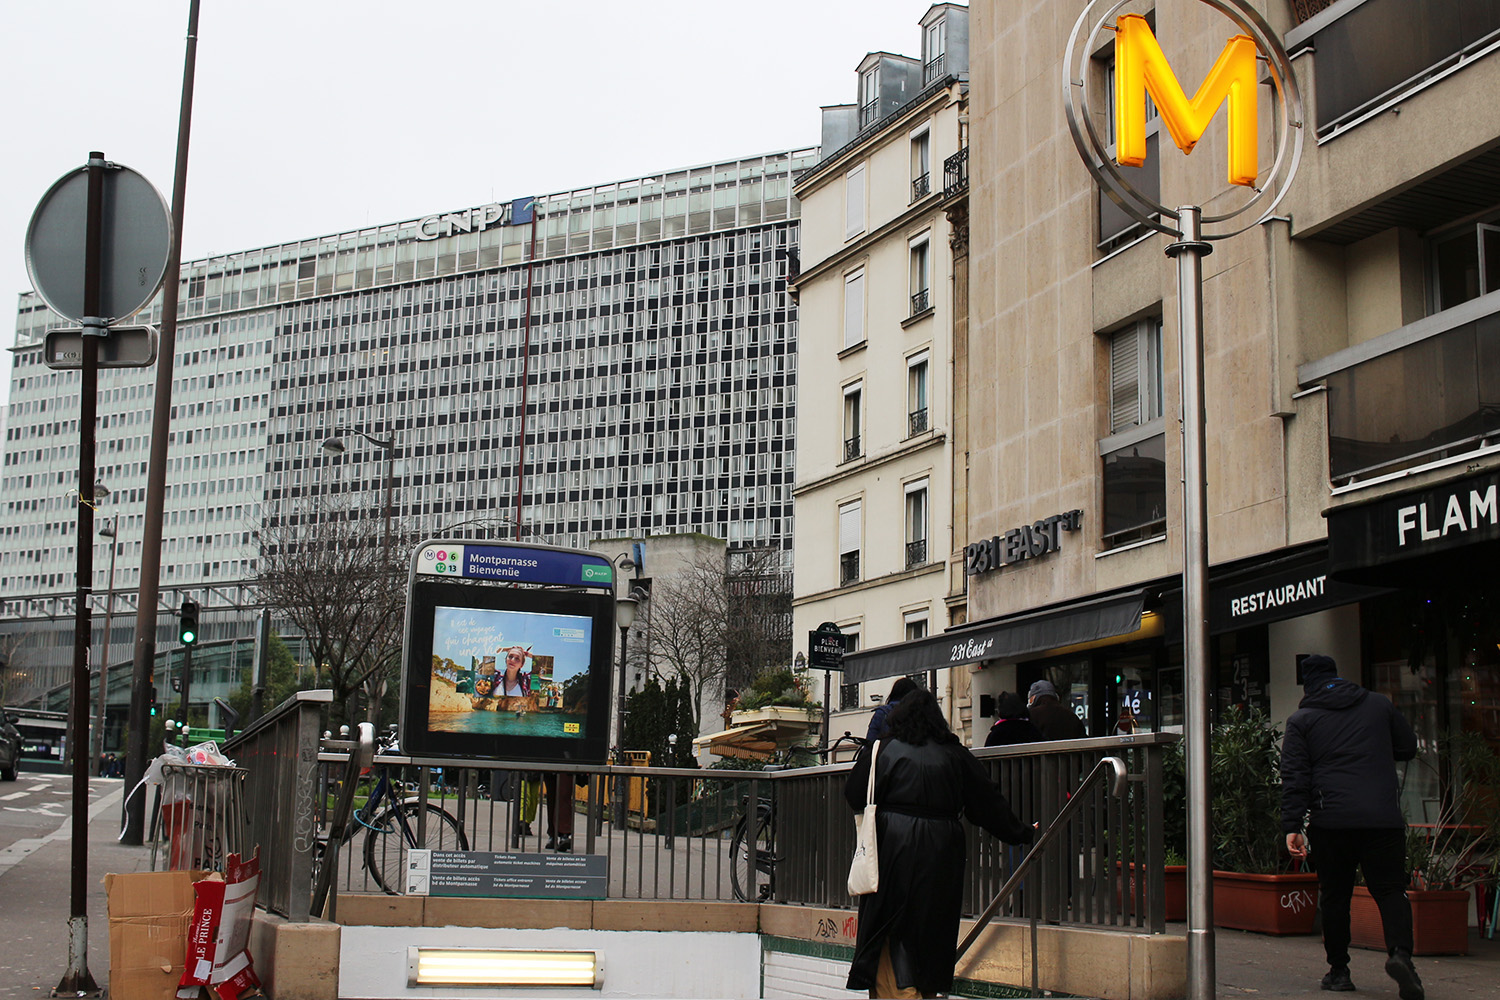 Le rendez-vous est fixé dans le 15ème arrondissement. Notre reportrice, basé dans l’est parisien, doit donc prendre le métro pour traverser la capitale © Globe Reporters